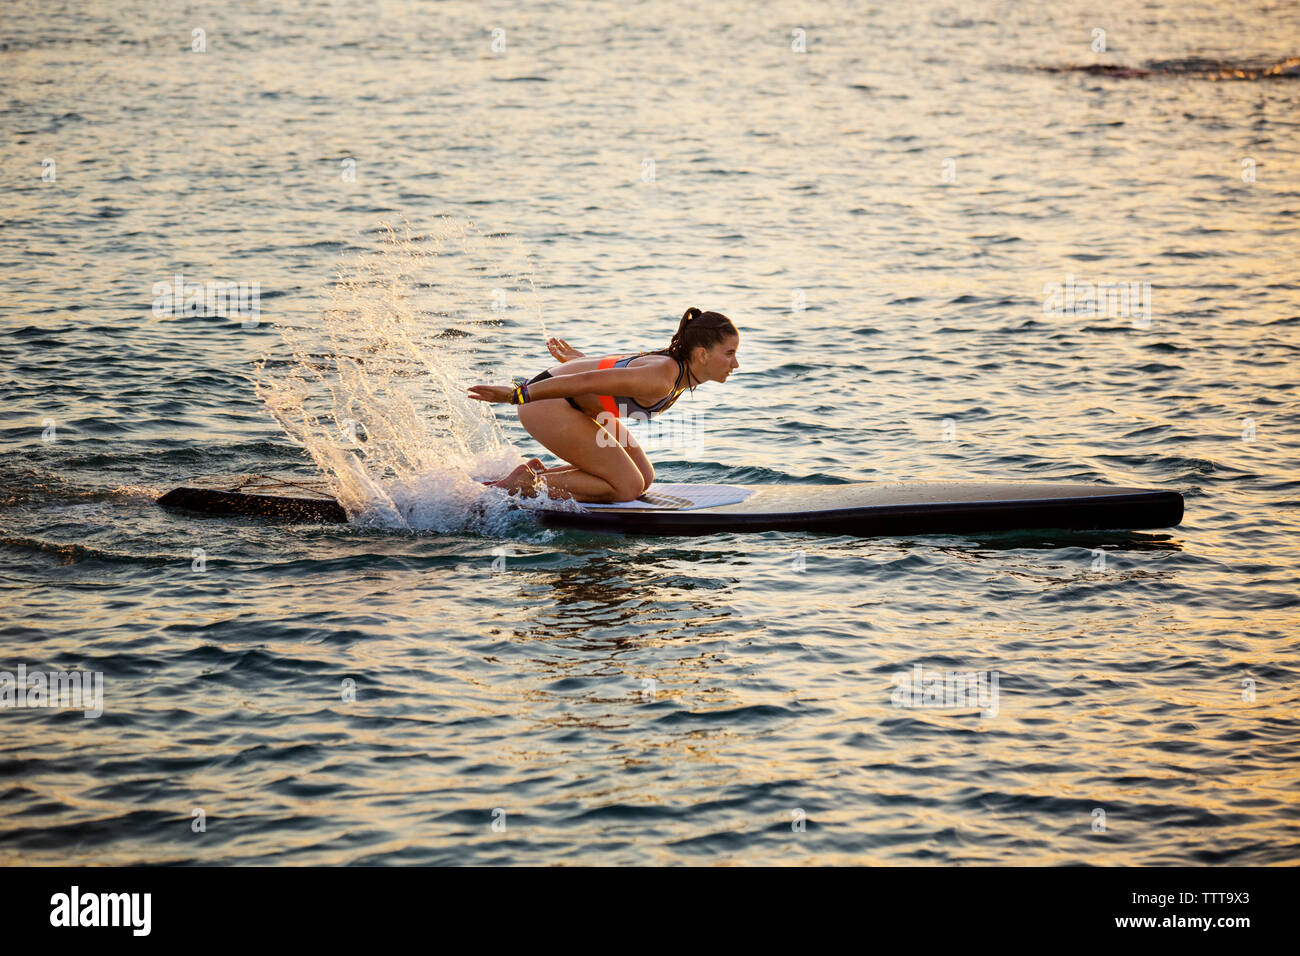 Femme agenouillée sur le paddleboard tandis que les projections d'eau de mer Banque D'Images